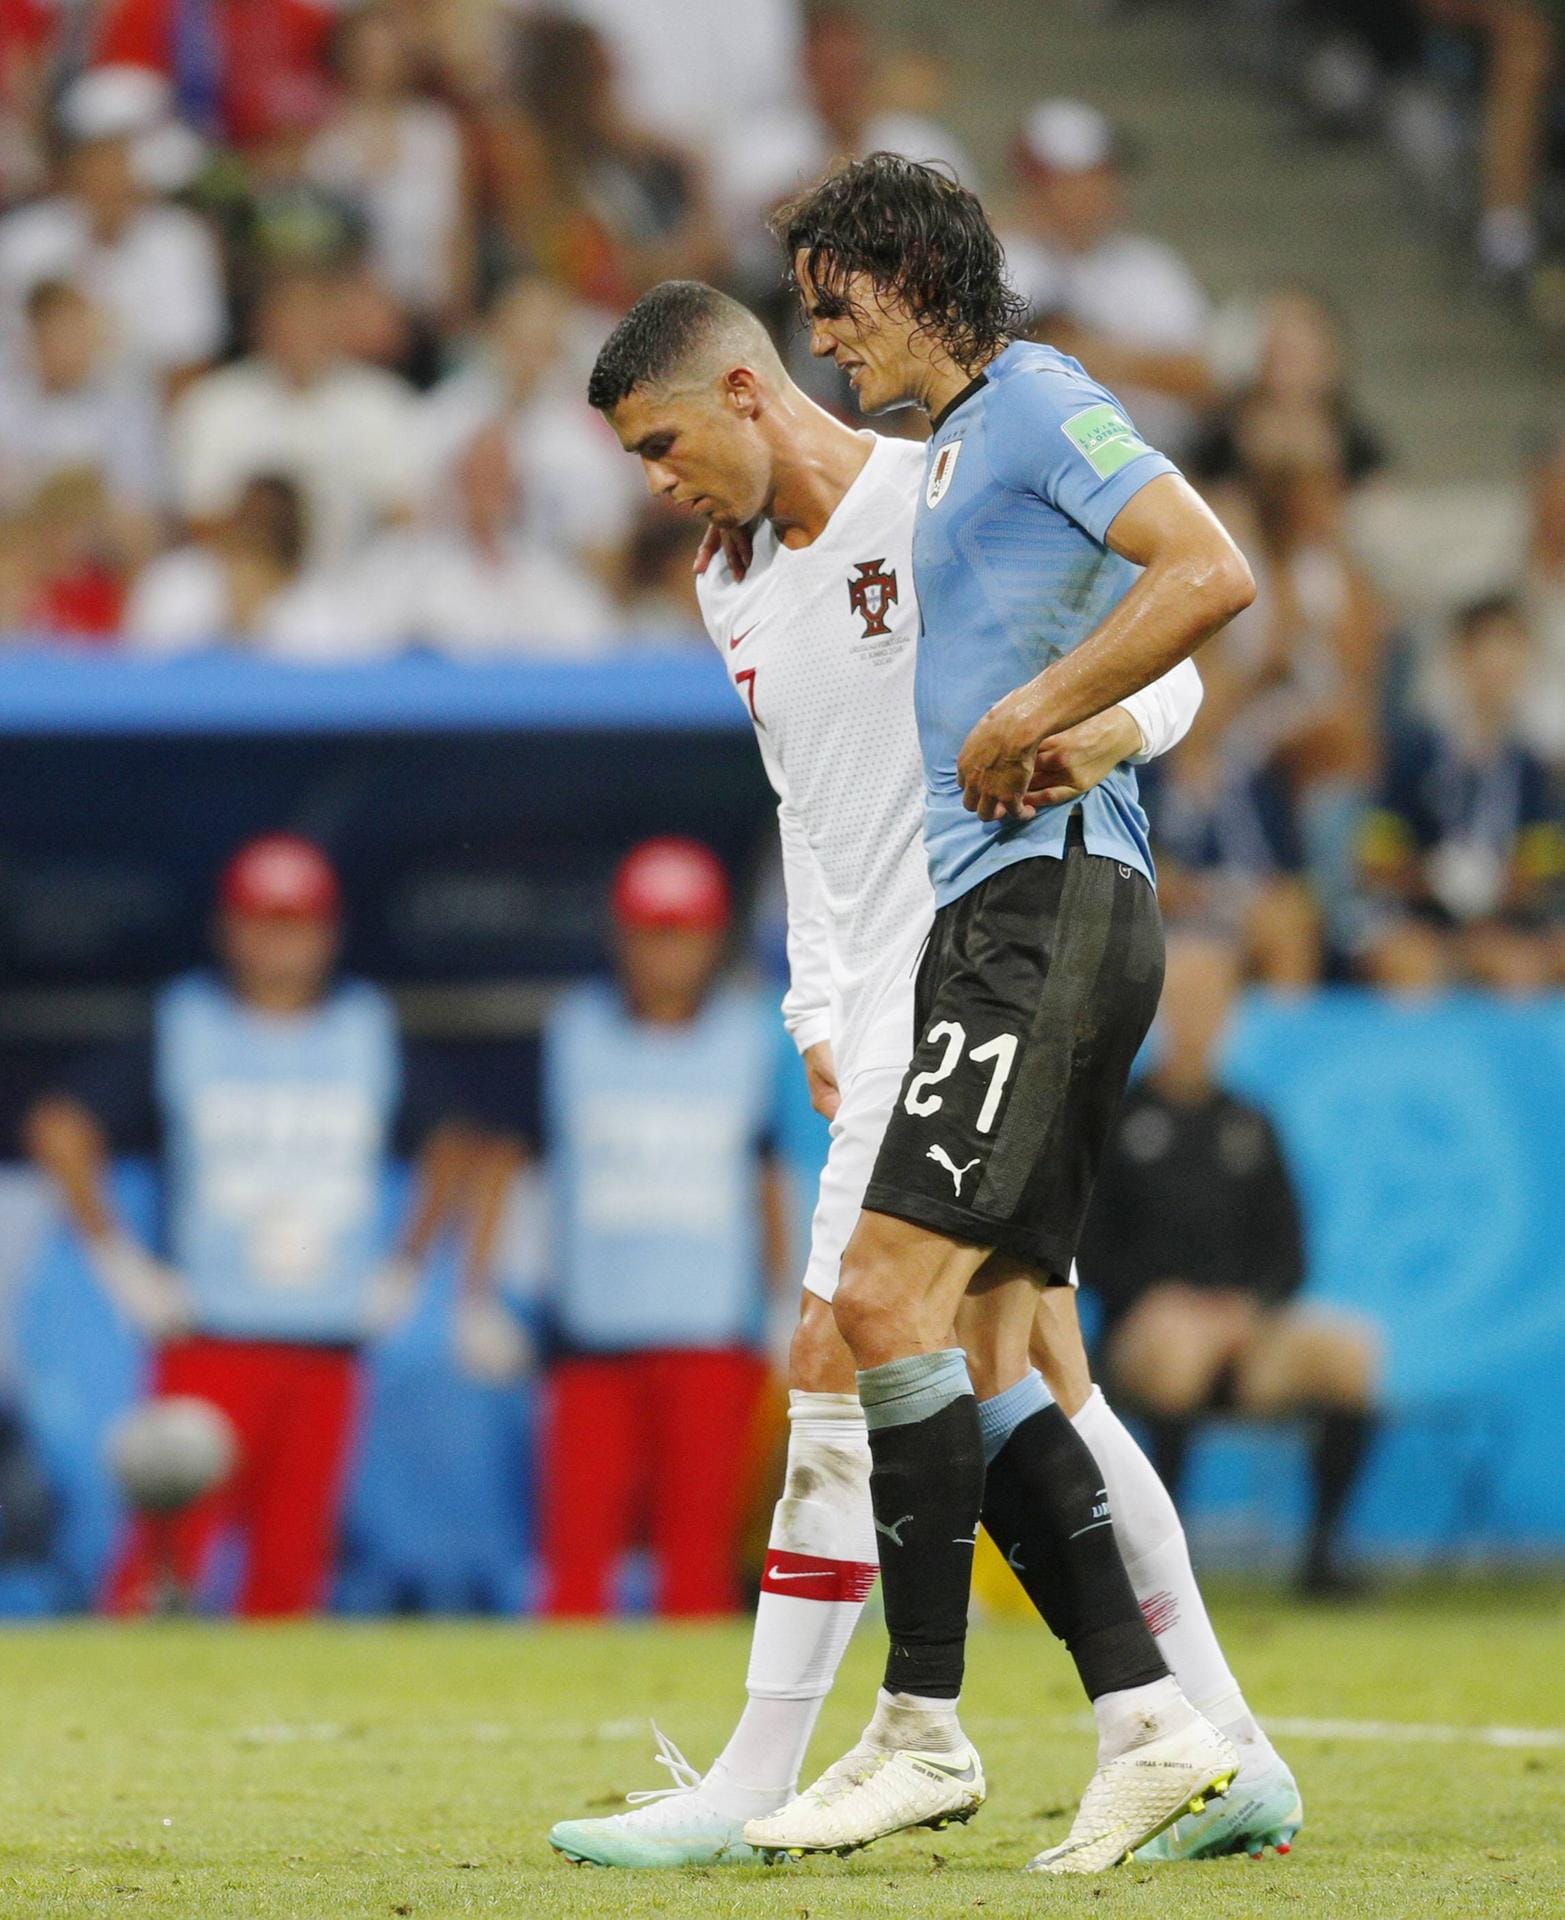 Eine der besonderen Szenen. Portugals Ronaldo hilft dem verletzten Uruguayer Cavani vom Platz.